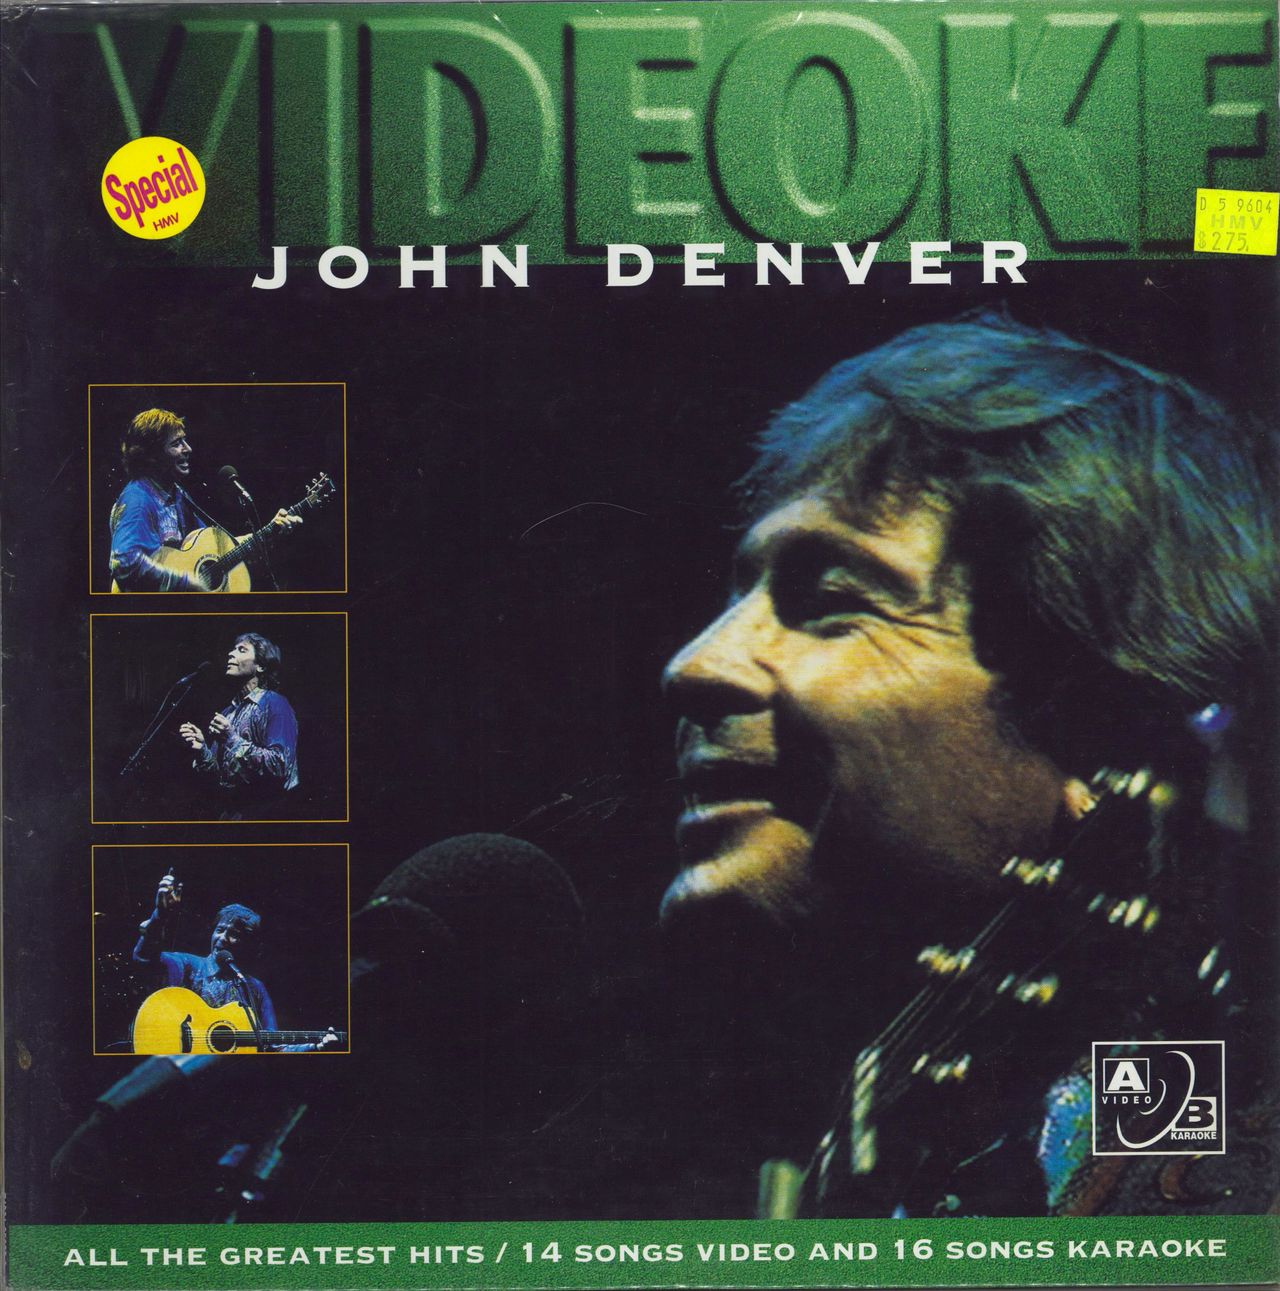 John Denver Videoke Hong Kong laserdisc / lazerdisc 74321-35633-6